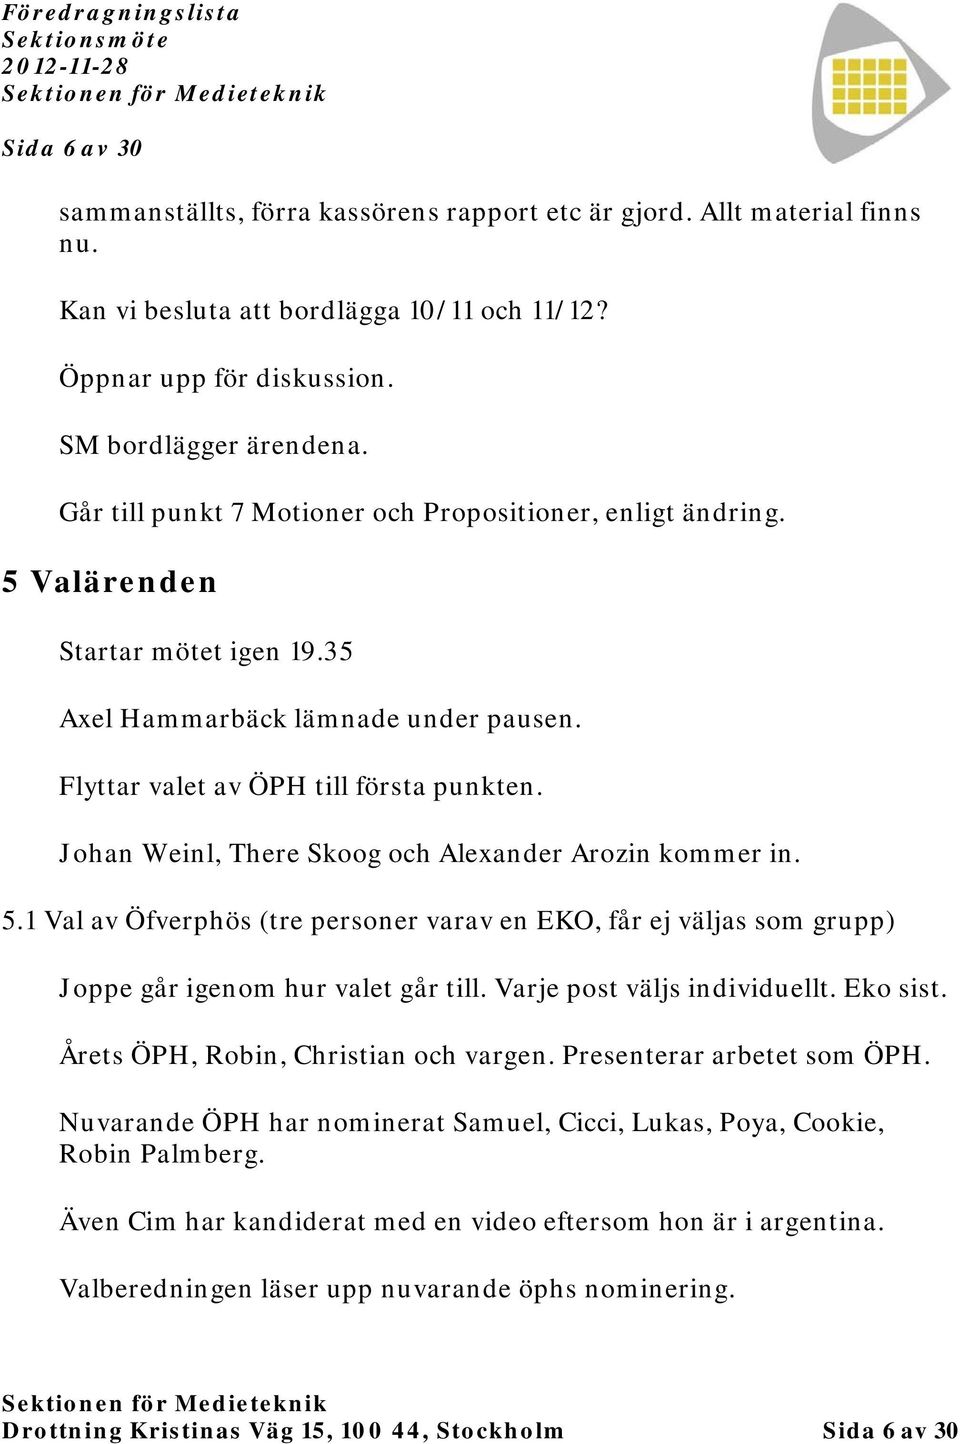 Johan Weinl, There Skoog och Alexander Arozin kommer in. 5.1 Val av Öfverphös (tre personer varav en EKO, får ej väljas som grupp) Joppe går igenom hur valet går till. Varje post väljs individuellt.